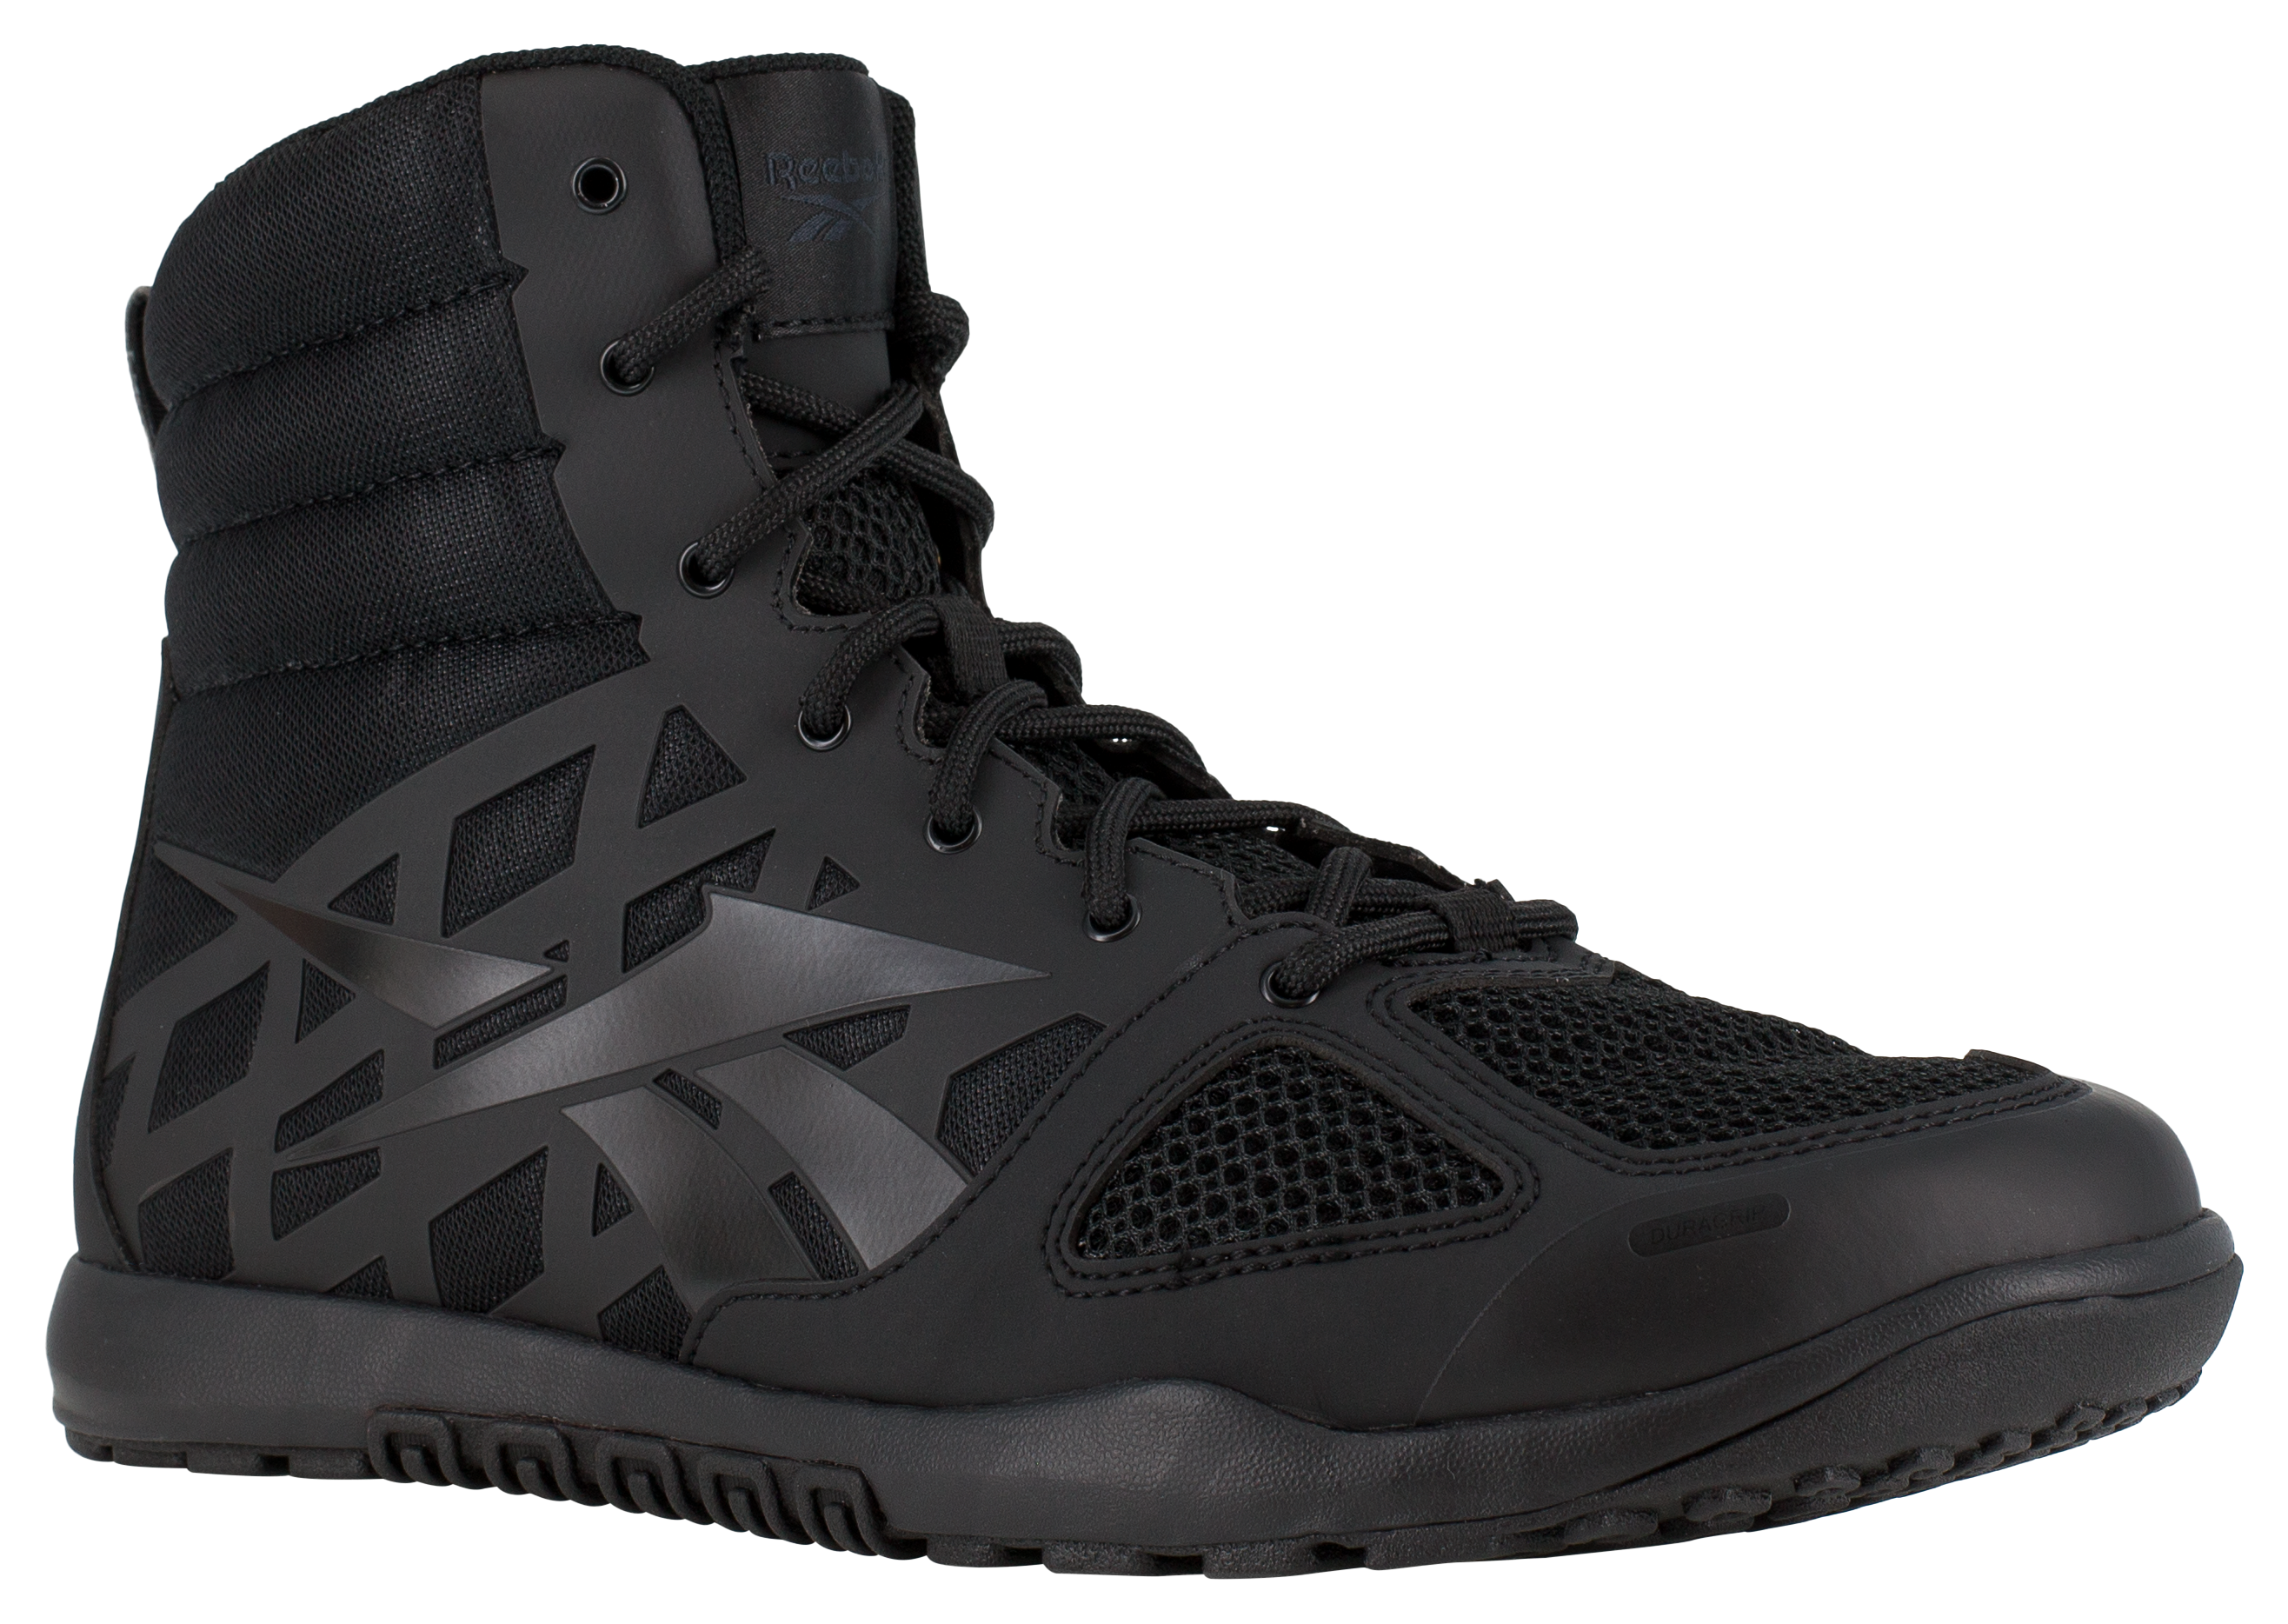 Reebok Nano Tactical 6″ Tactical Boots for Men - Black - 10.5W